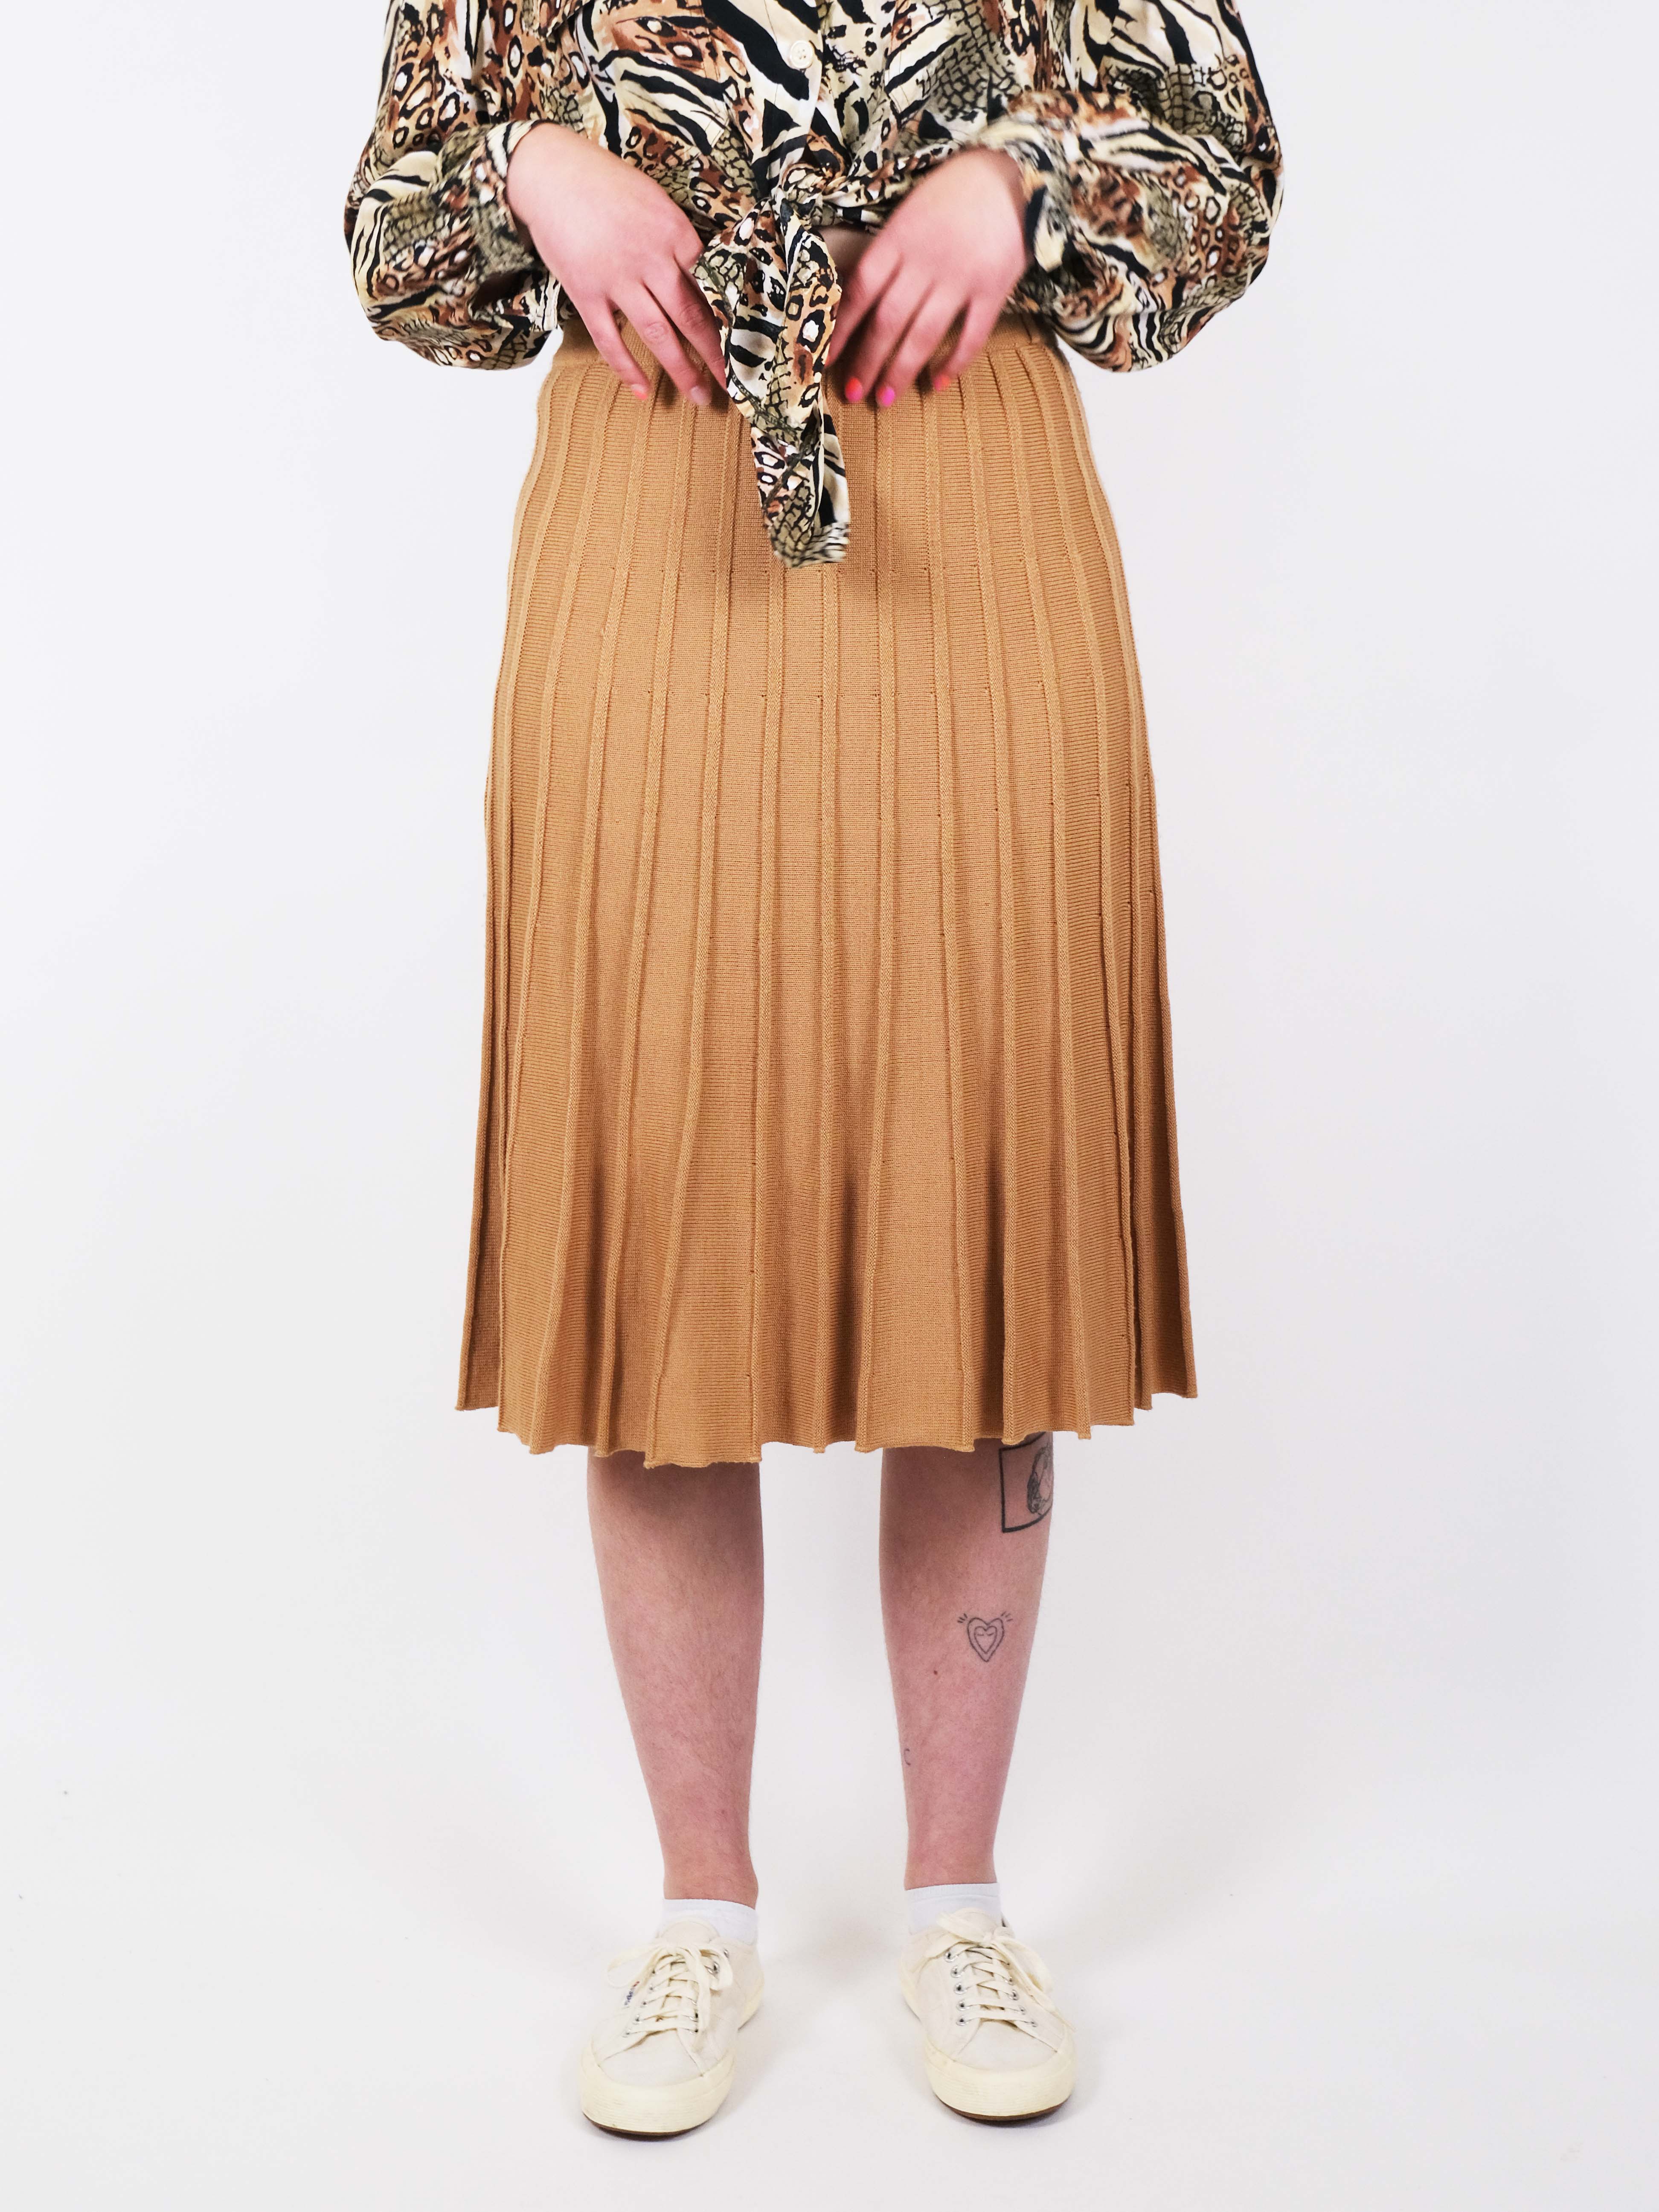 Beige knitted skirt